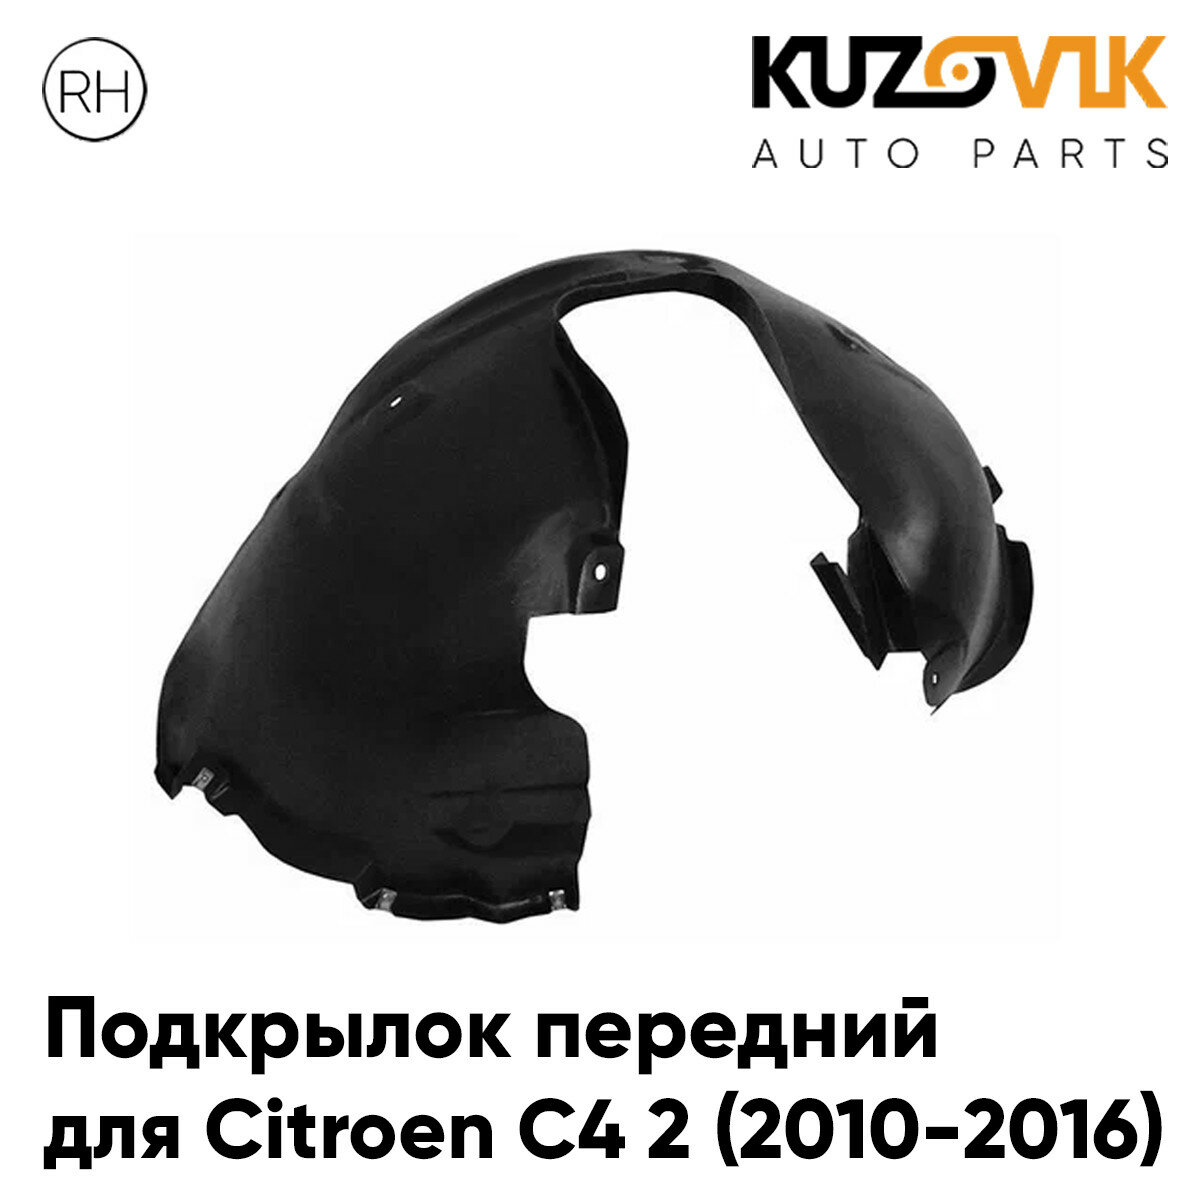 Подкрылок передний для Ситроен С4 2 Citroen C4 2 (2010-2016) правый